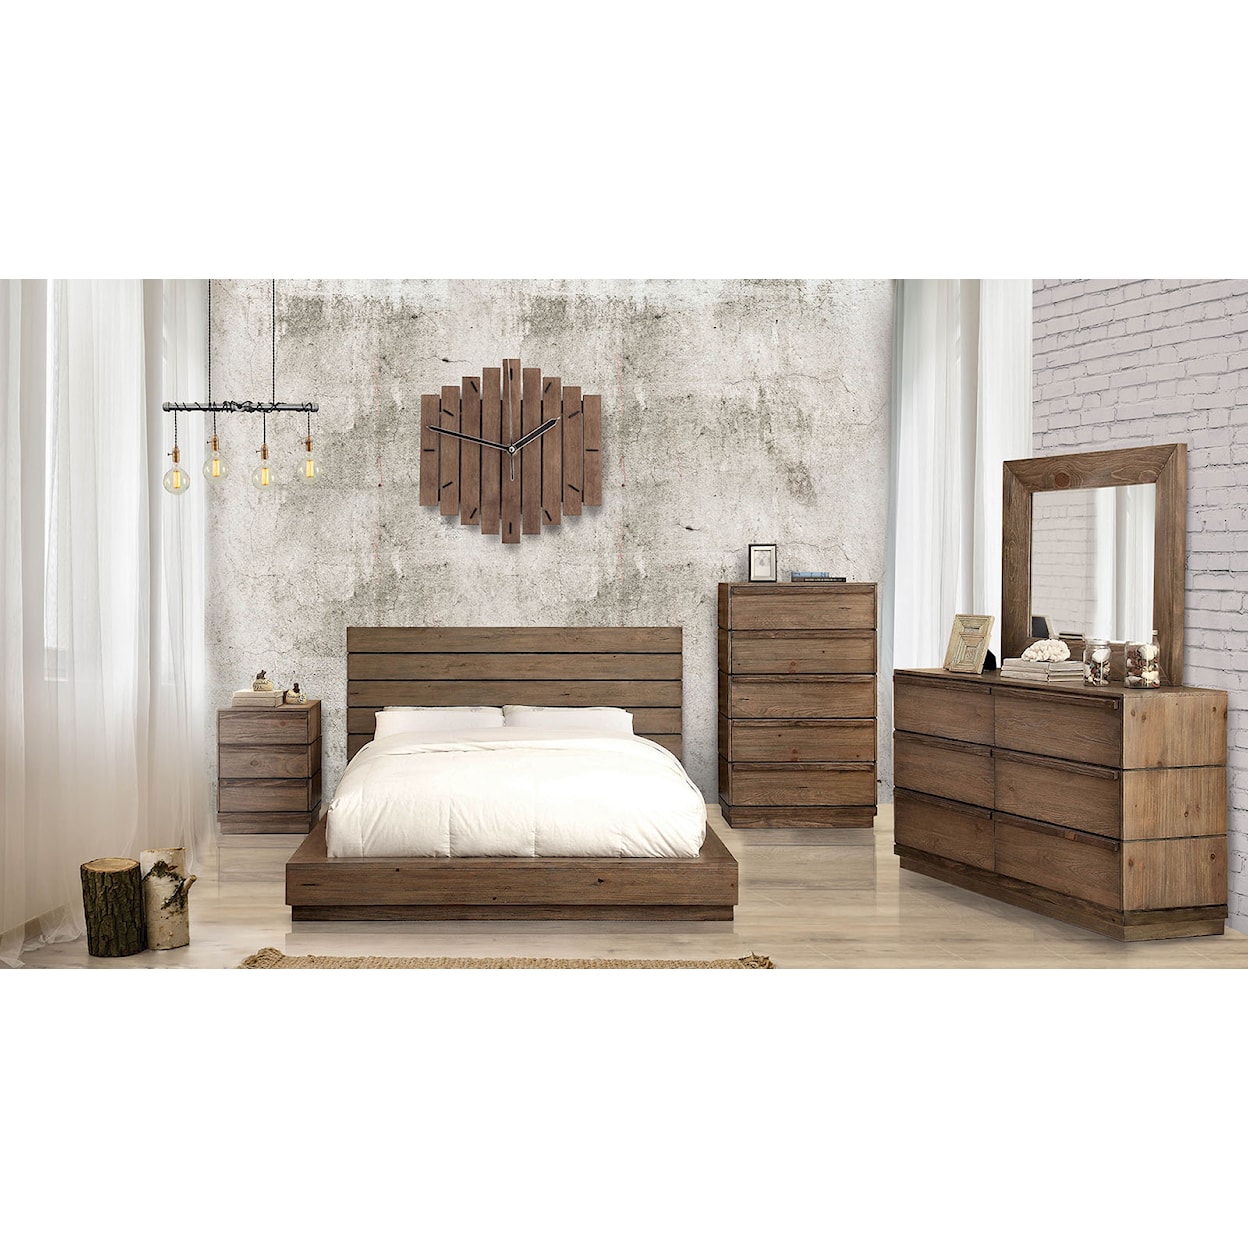 Furniture of America Coimbra 5-Piece Queen Bedroom Set